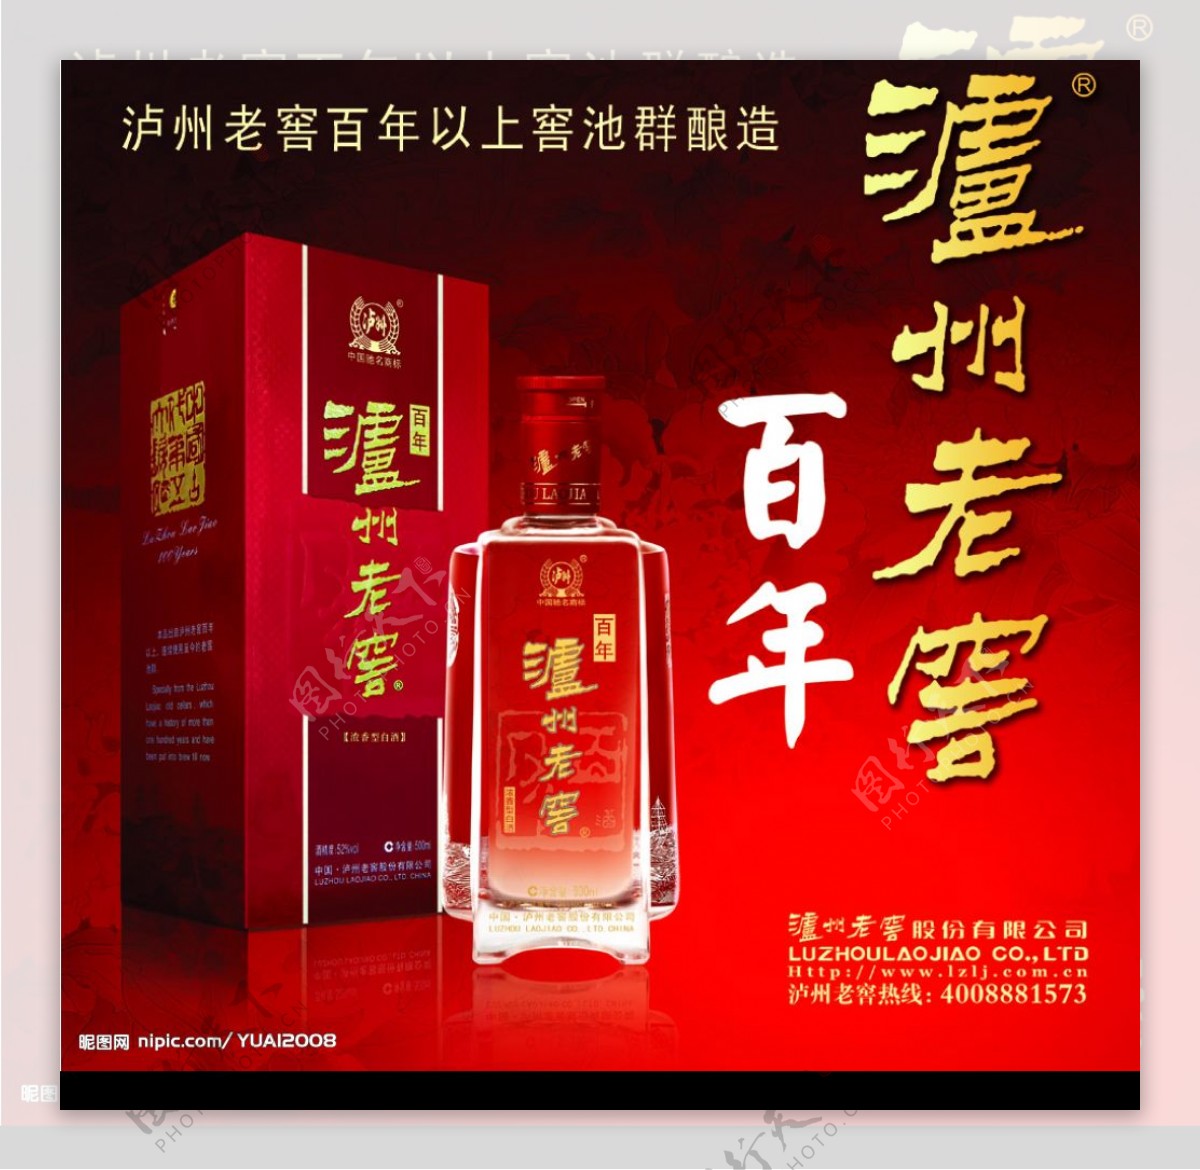 泸州老窖百年天津(100年泸州老窖) - 美酒网